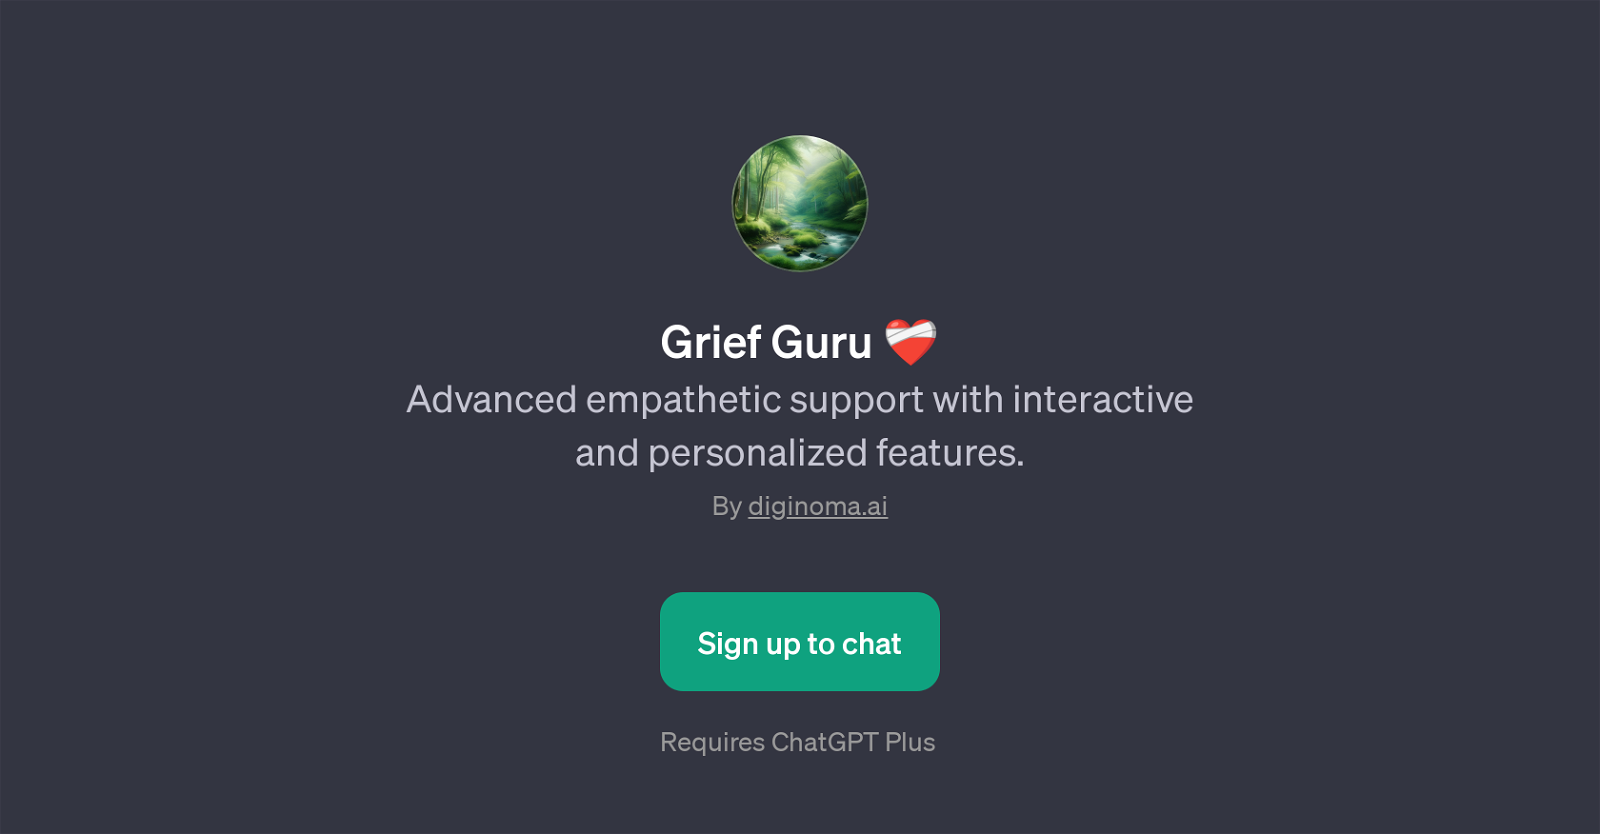 Grief Guru website